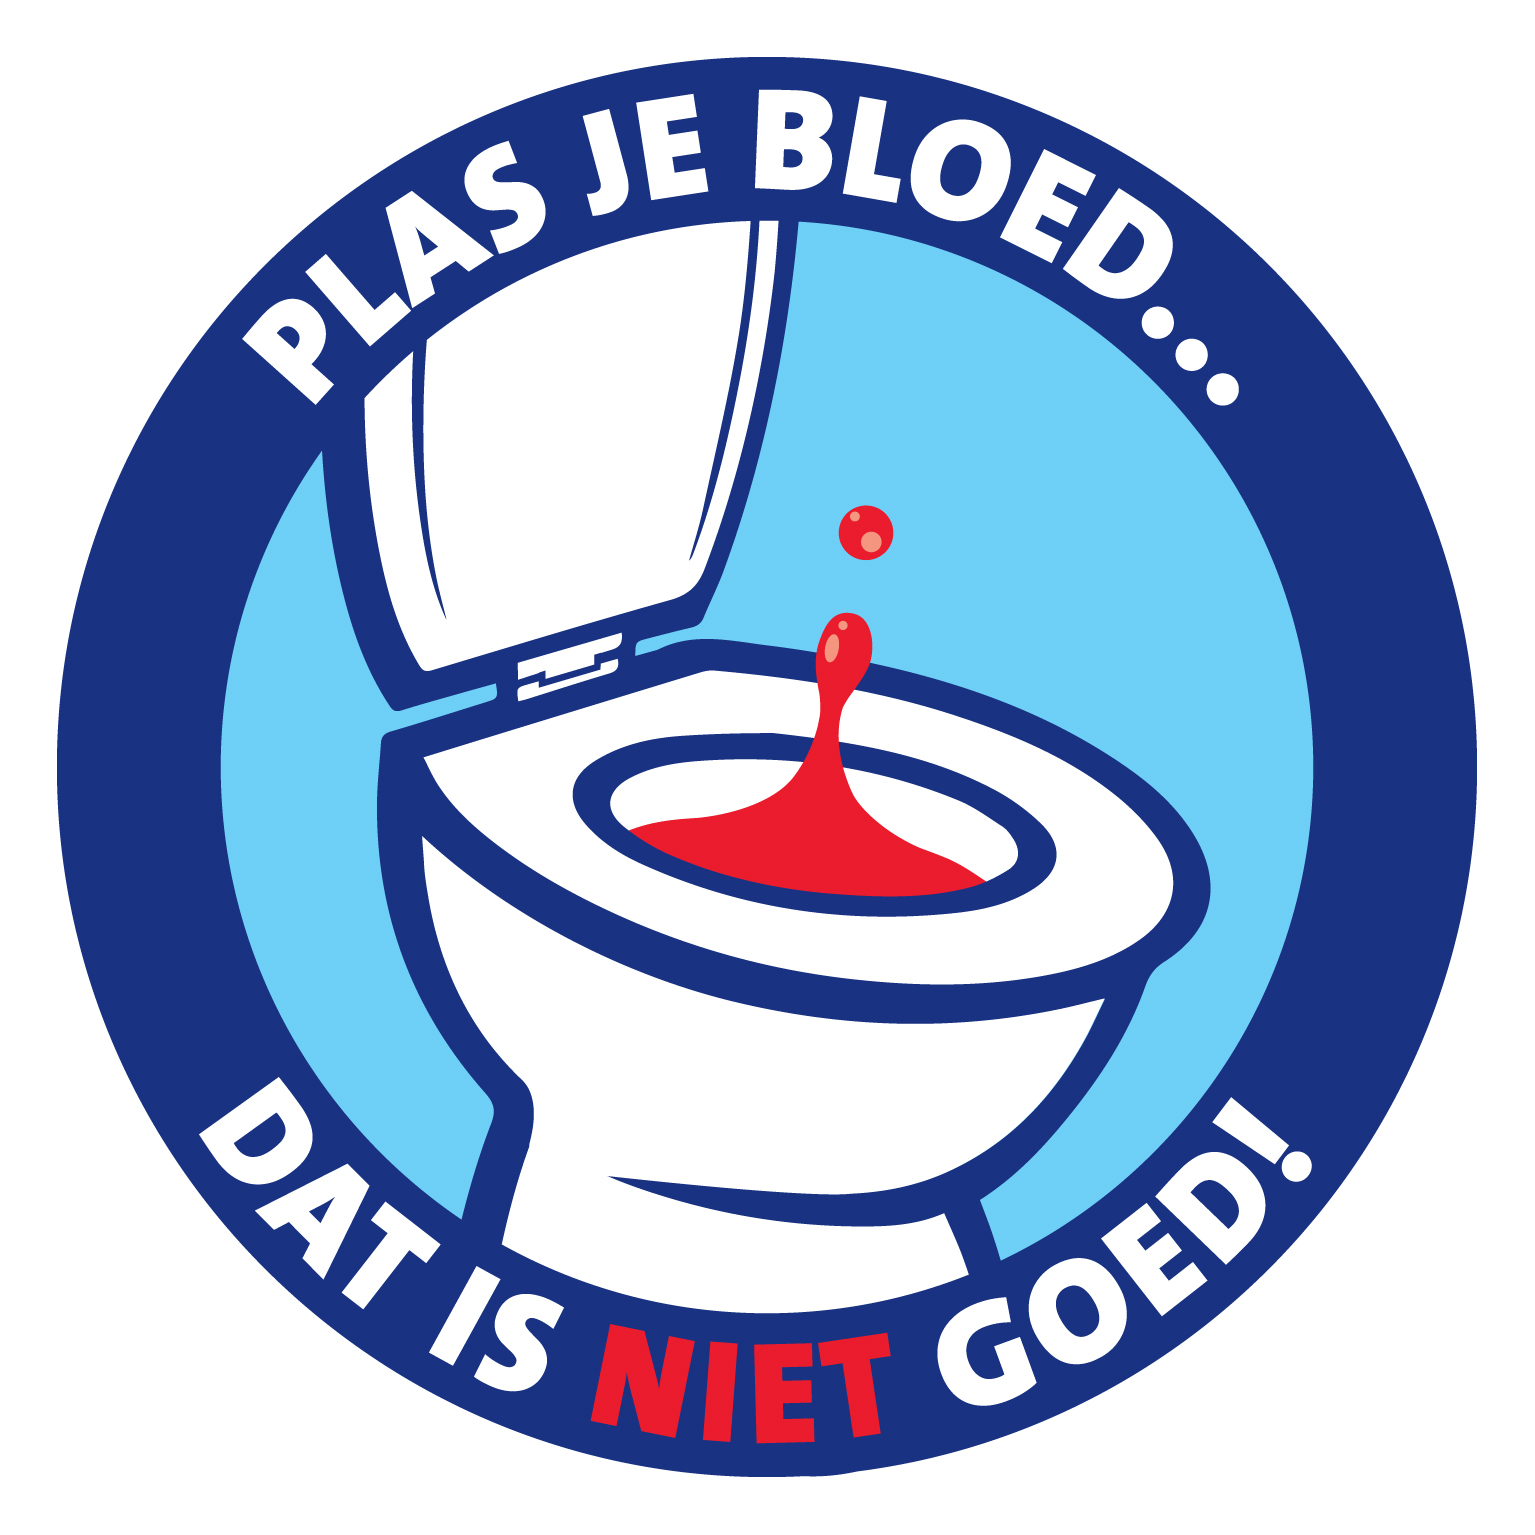 Plas je bloed, dat is niet goed! - Erasmus MC Foundation